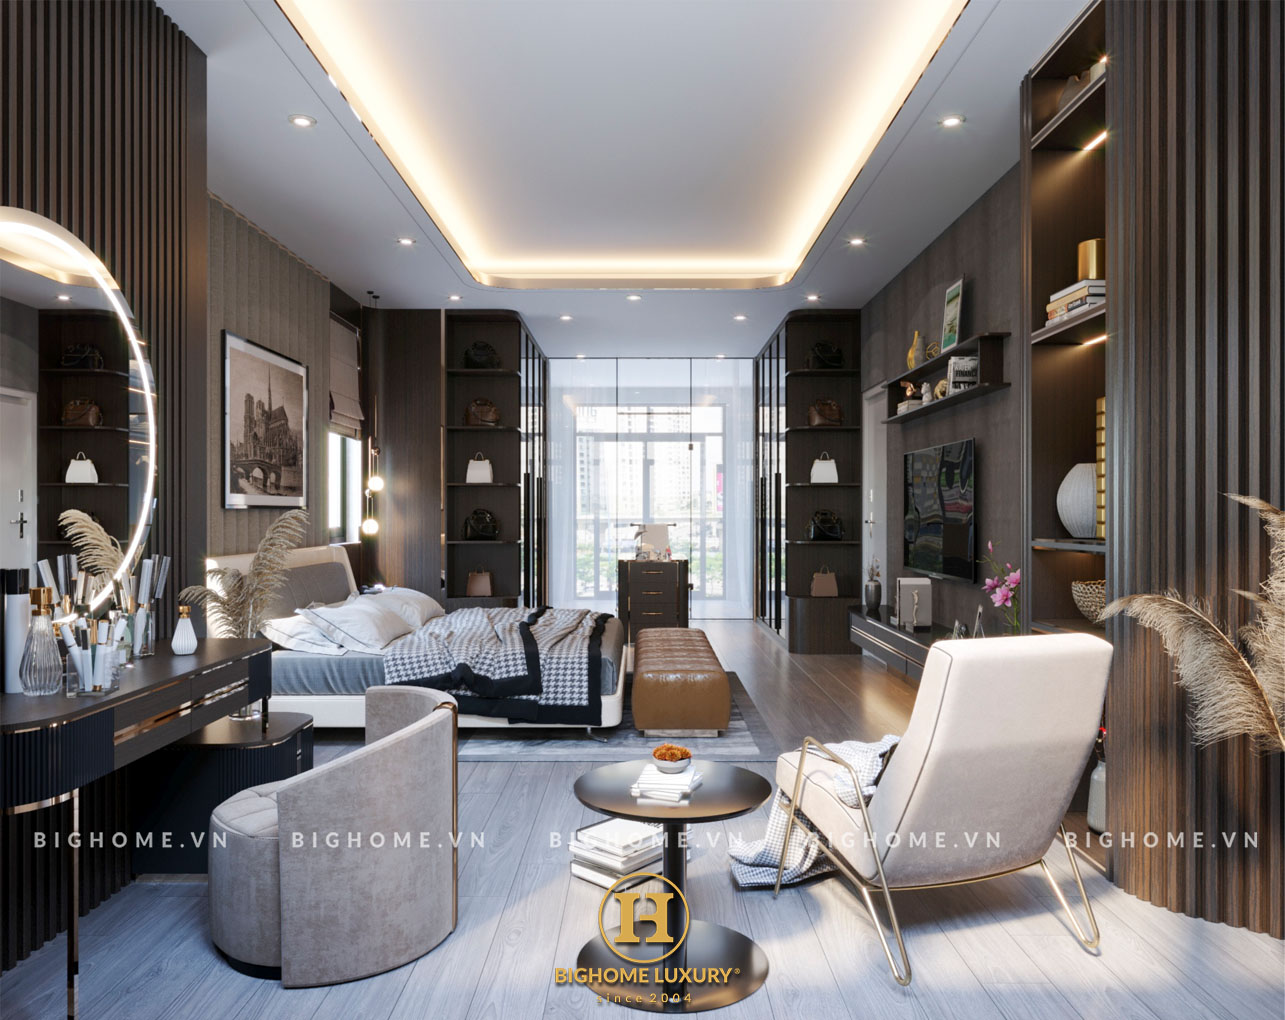 Tìm hiểu nội thất phong cách luxury tại Louis Tân Mai